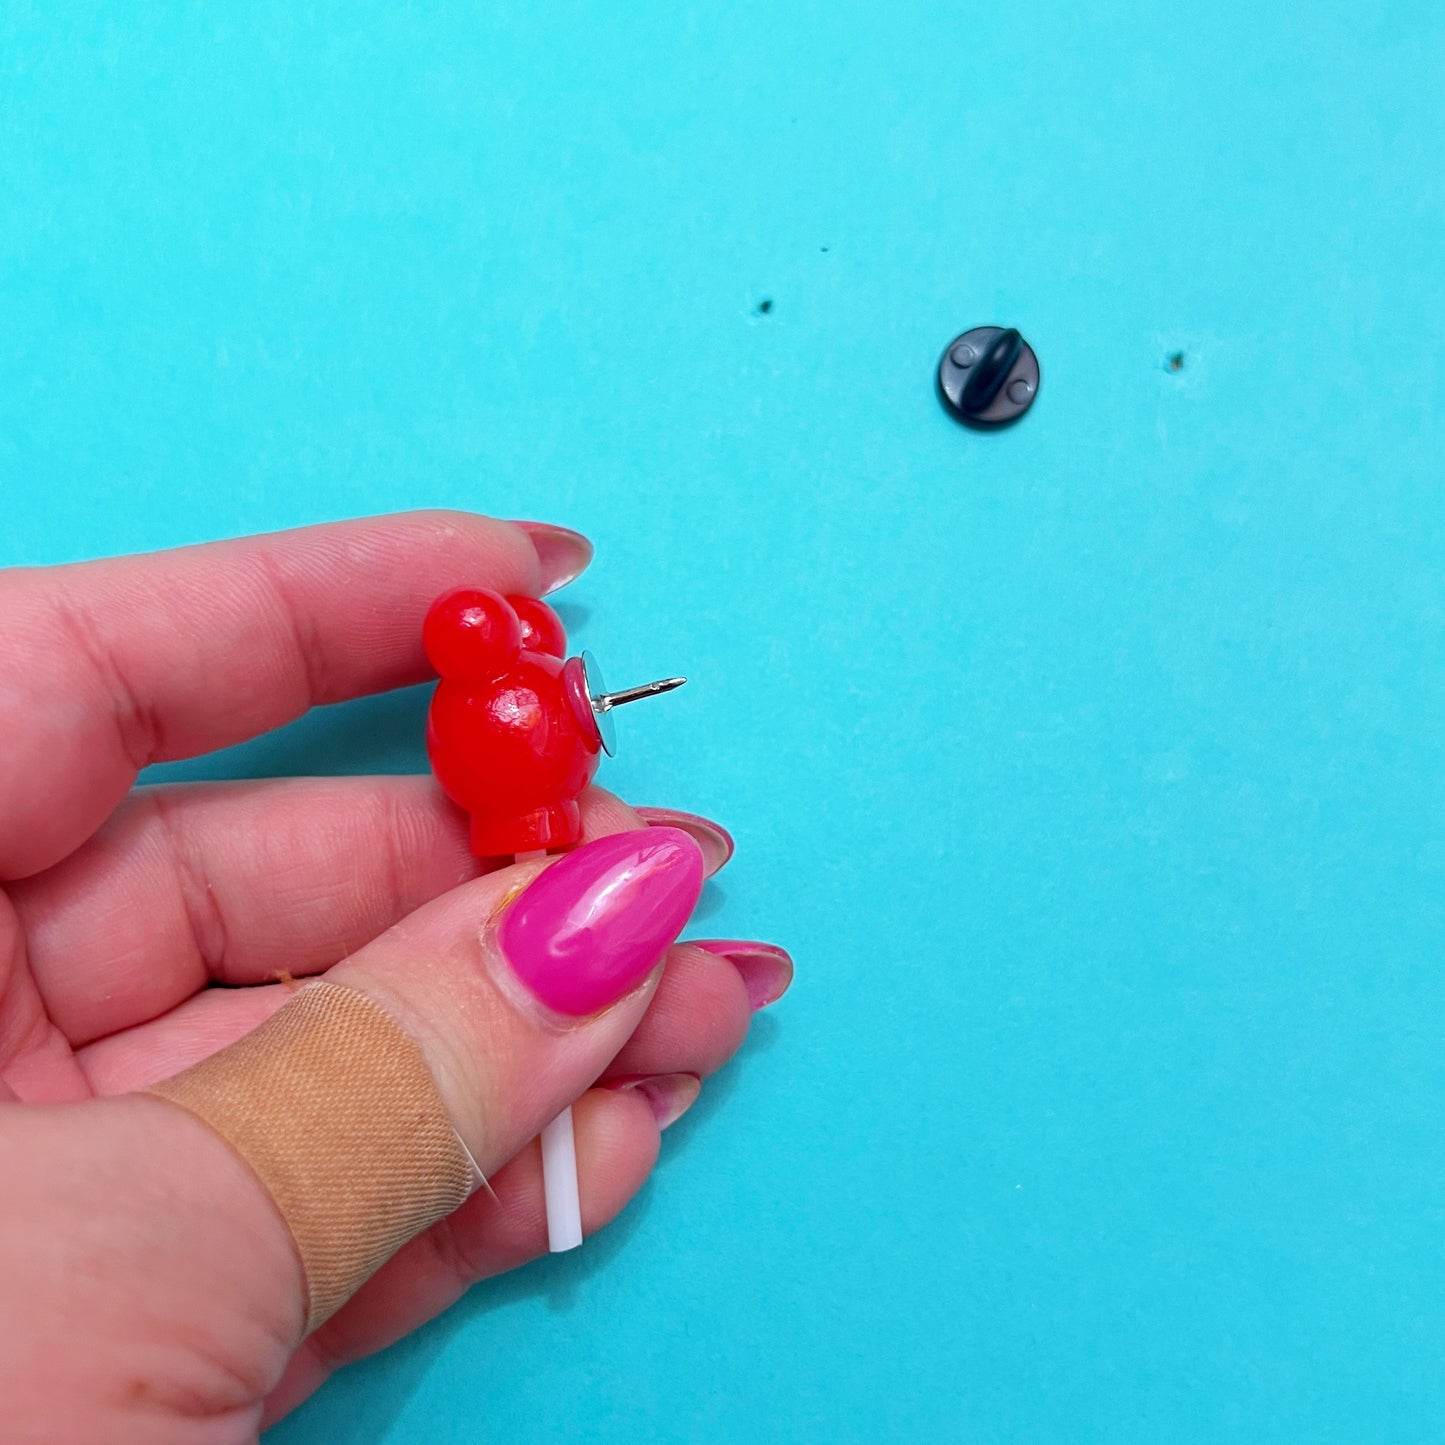 Red Mouse Lollipop Lapel Pin